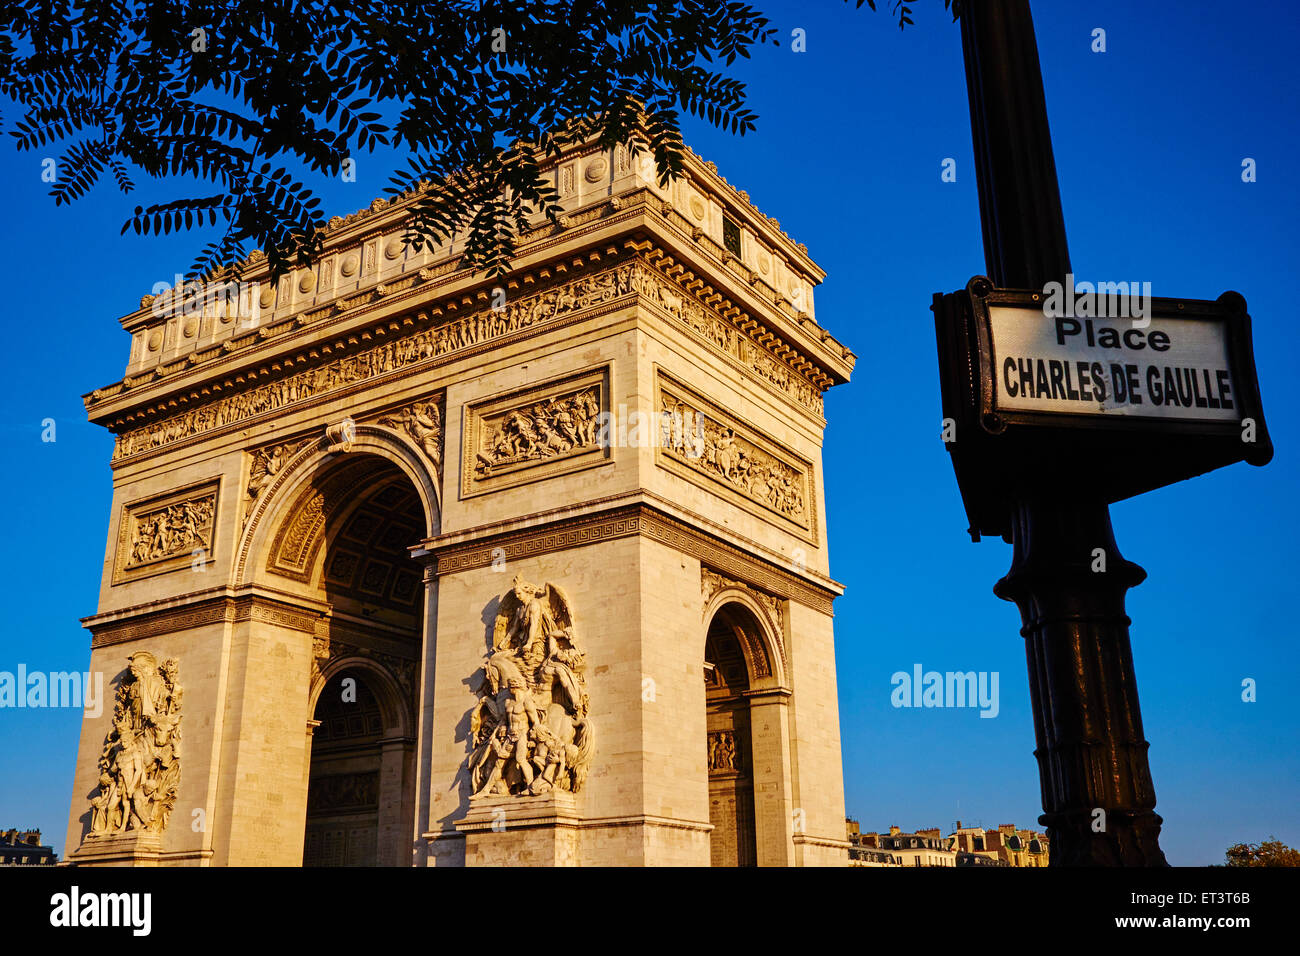 France, Paris, Arc de Triomphe Stock Photo